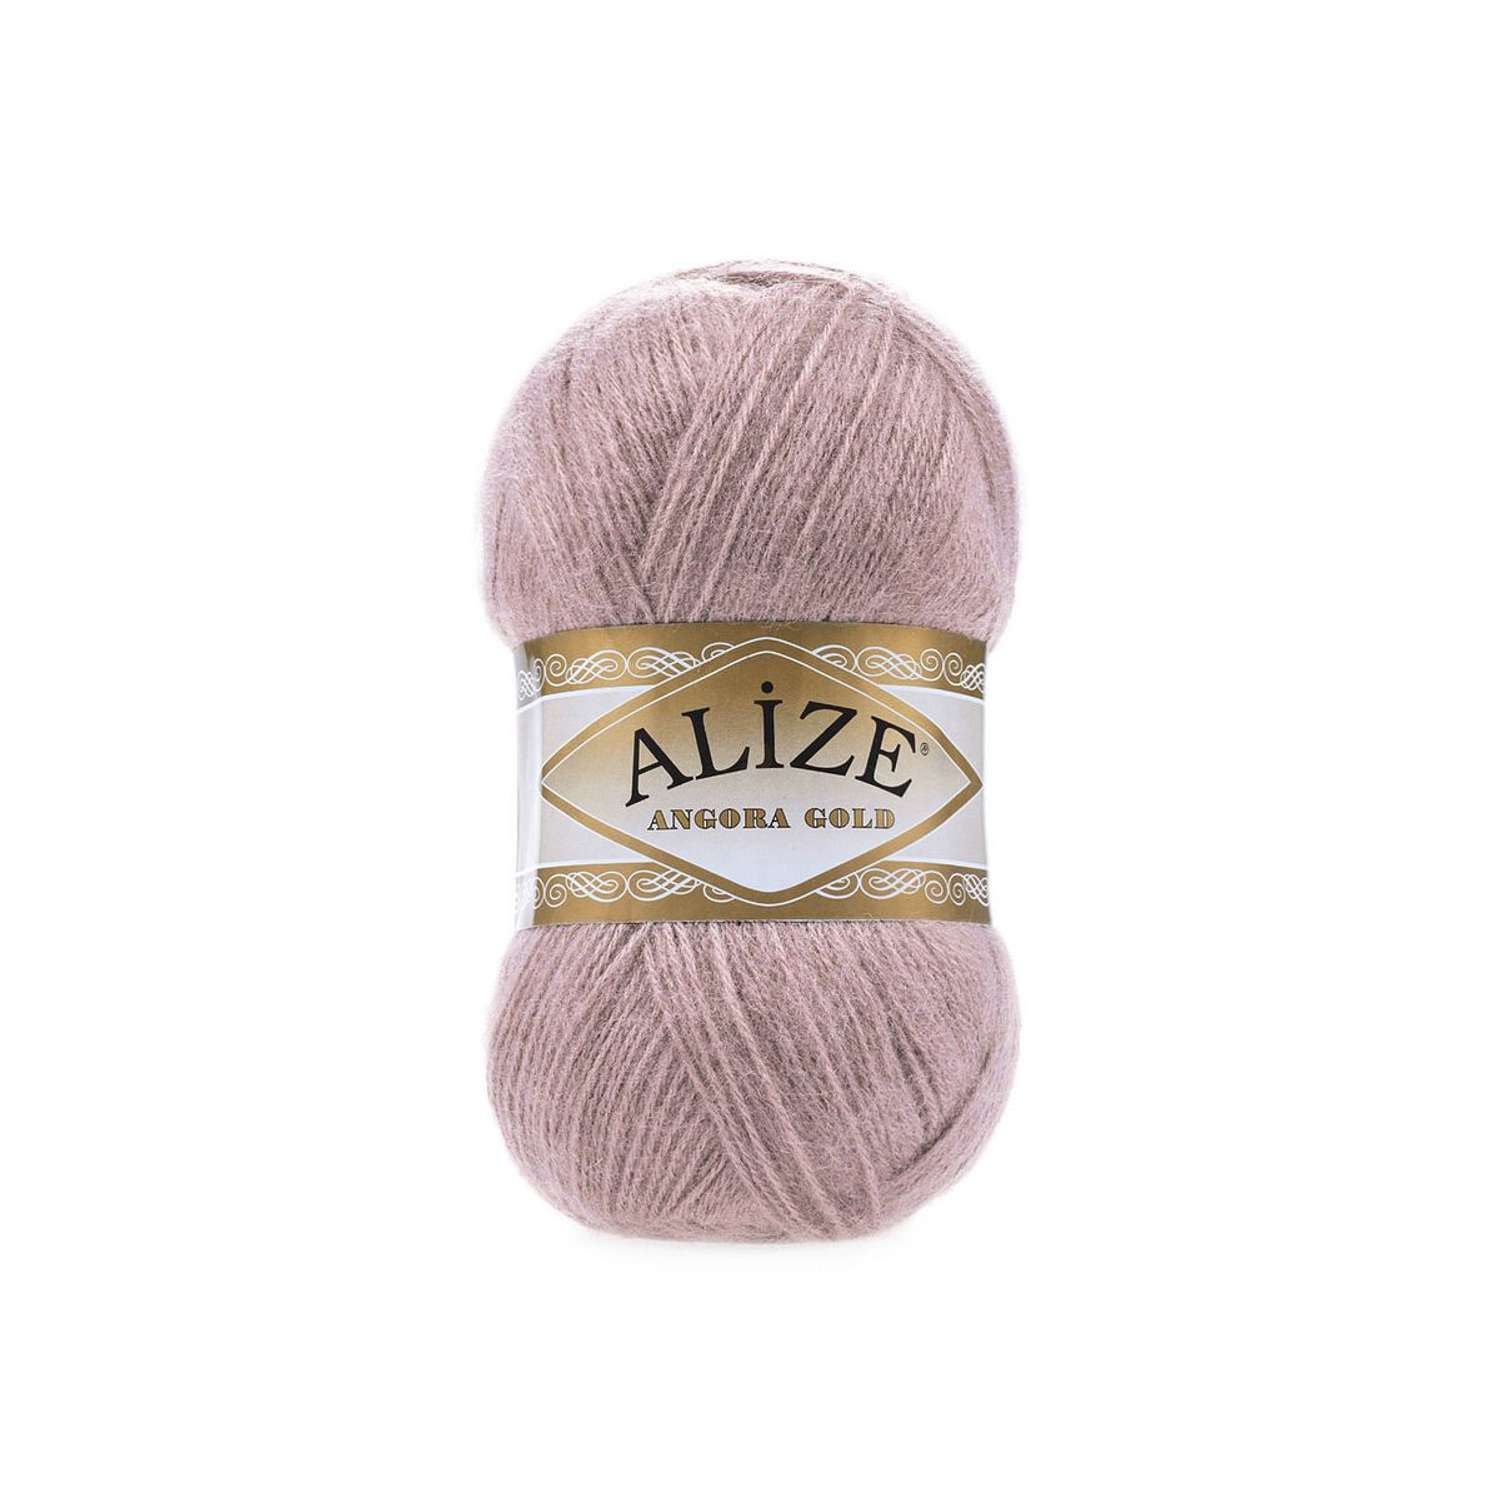 Пряжа Alize мягкая теплая для шарфов кардиганов Angora Gold 100 гр 550 м 5 мотков 163 серая роза - фото 6